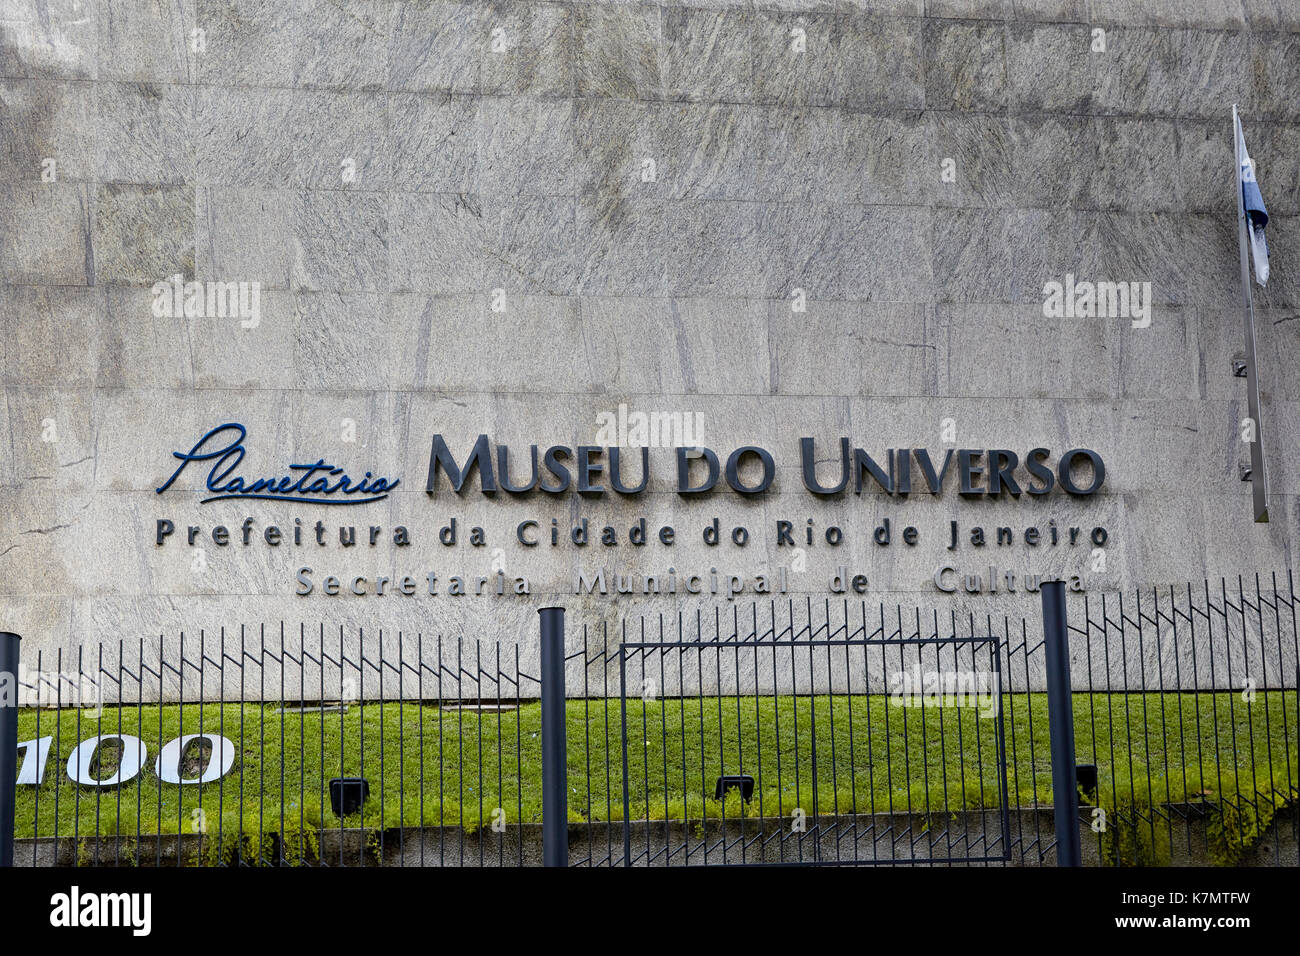 Museu do Universo (Museum of the Universe), Planetário do Rio (Planetarium of Rio), Rio de Janeiro, Brazil Stock Photo